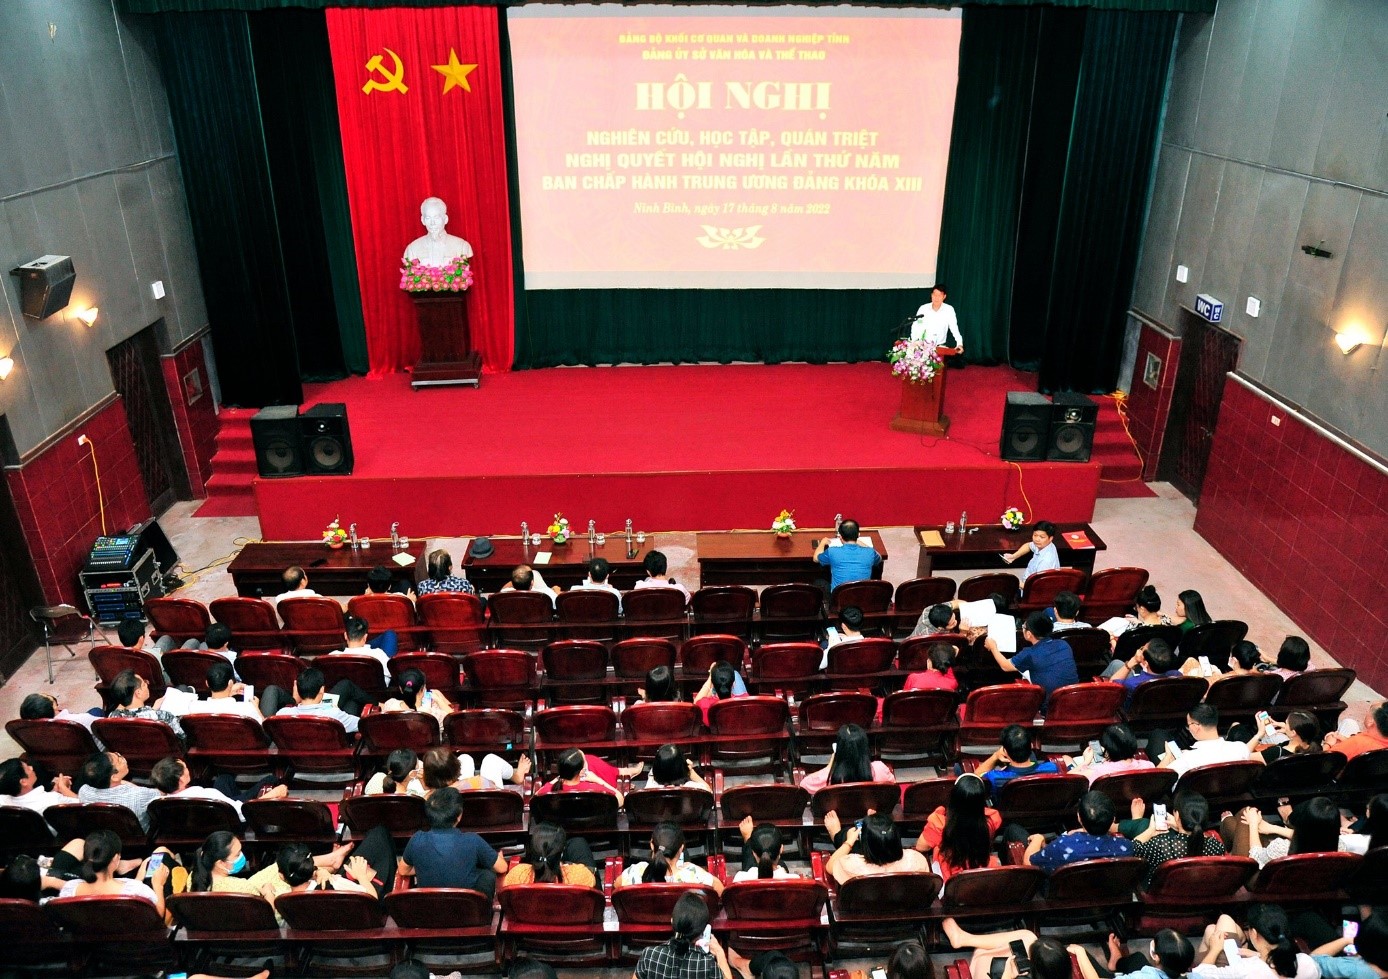 Tổ chức hội nghị nghiên cứu, học tập, quán triệt, triển khai Nghị quyết Hội nghị lần thứ 5 của Ban Chấp hành Trung ương Đảng khóa XIII